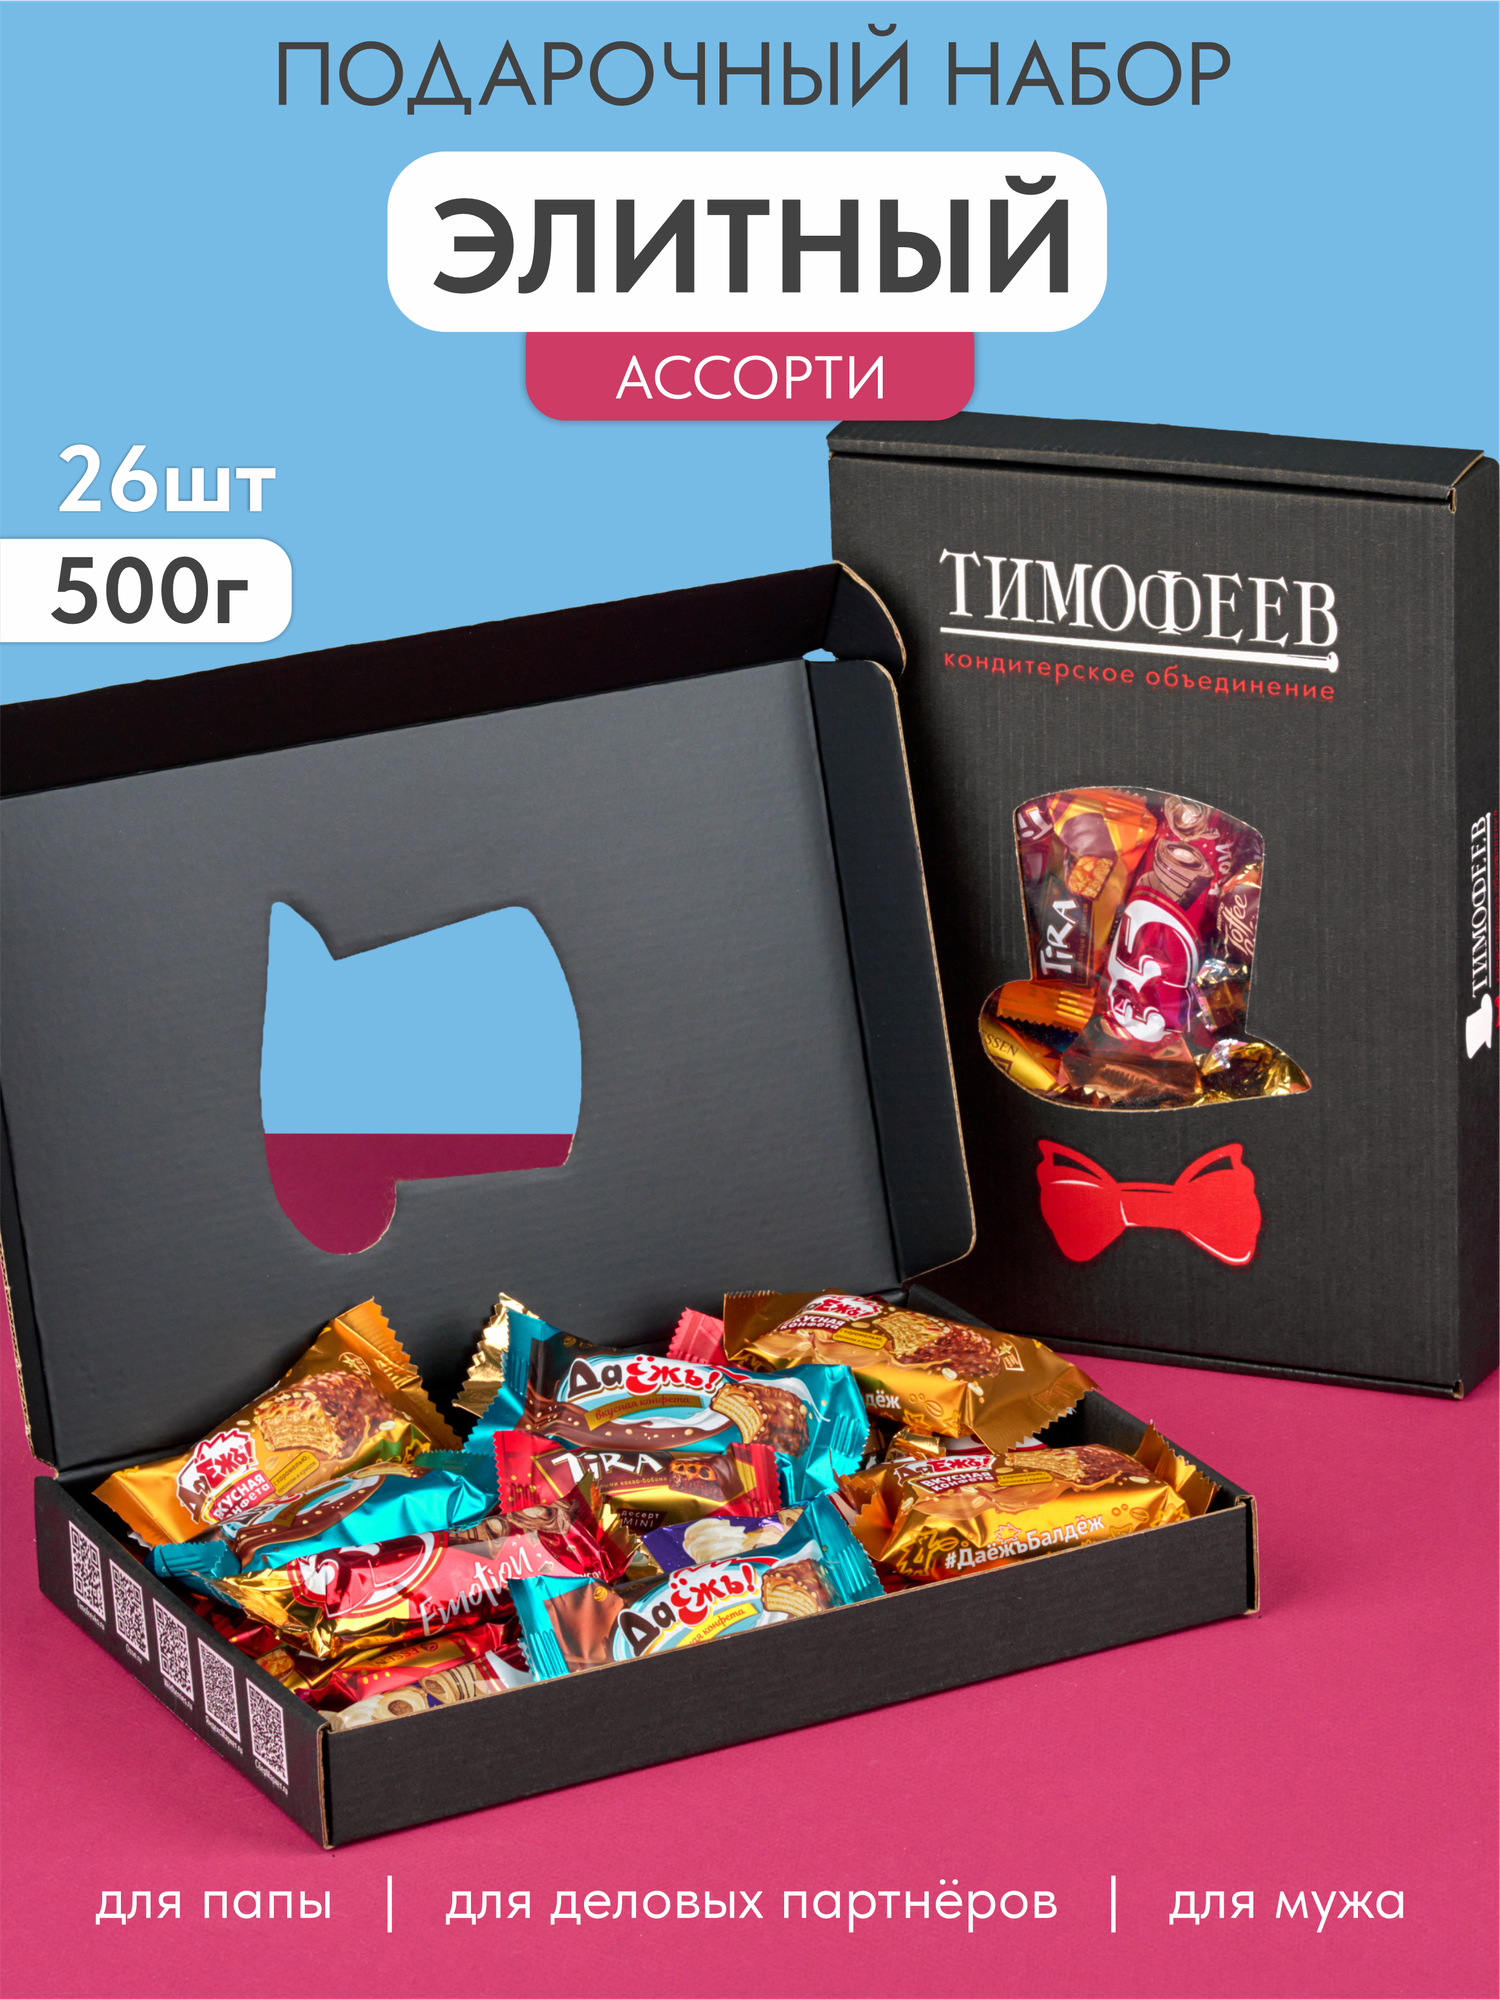 Набор конфет "Элитный Ассорти" в подарочной коробке 500 гр, Тимофеев ко